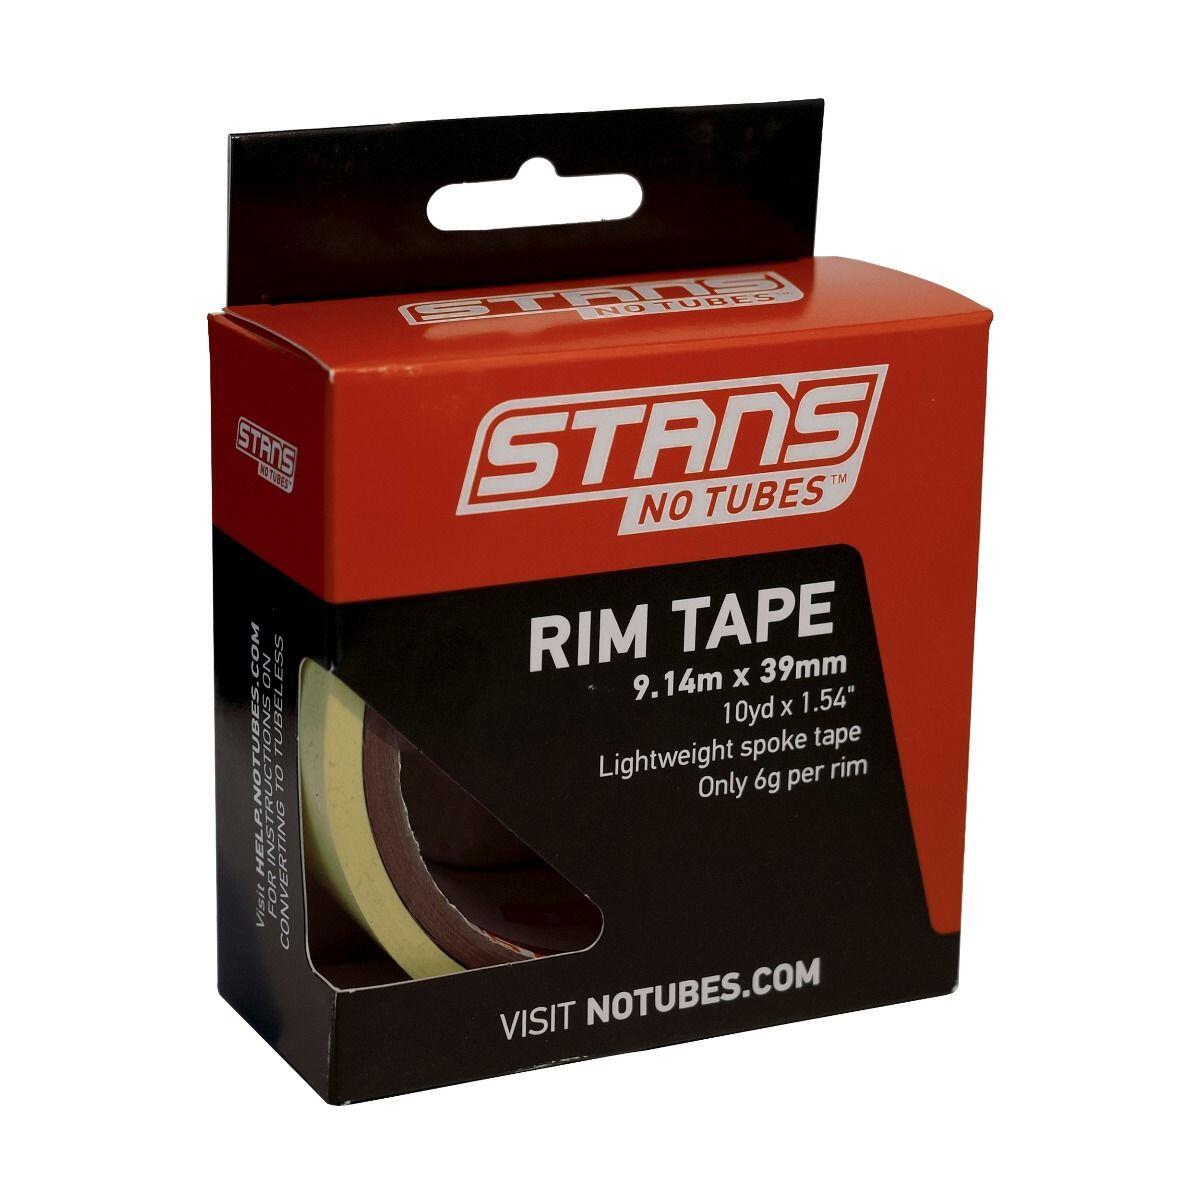 Stans NoTubes Rim Tape 10 yrd 39mm 1/3